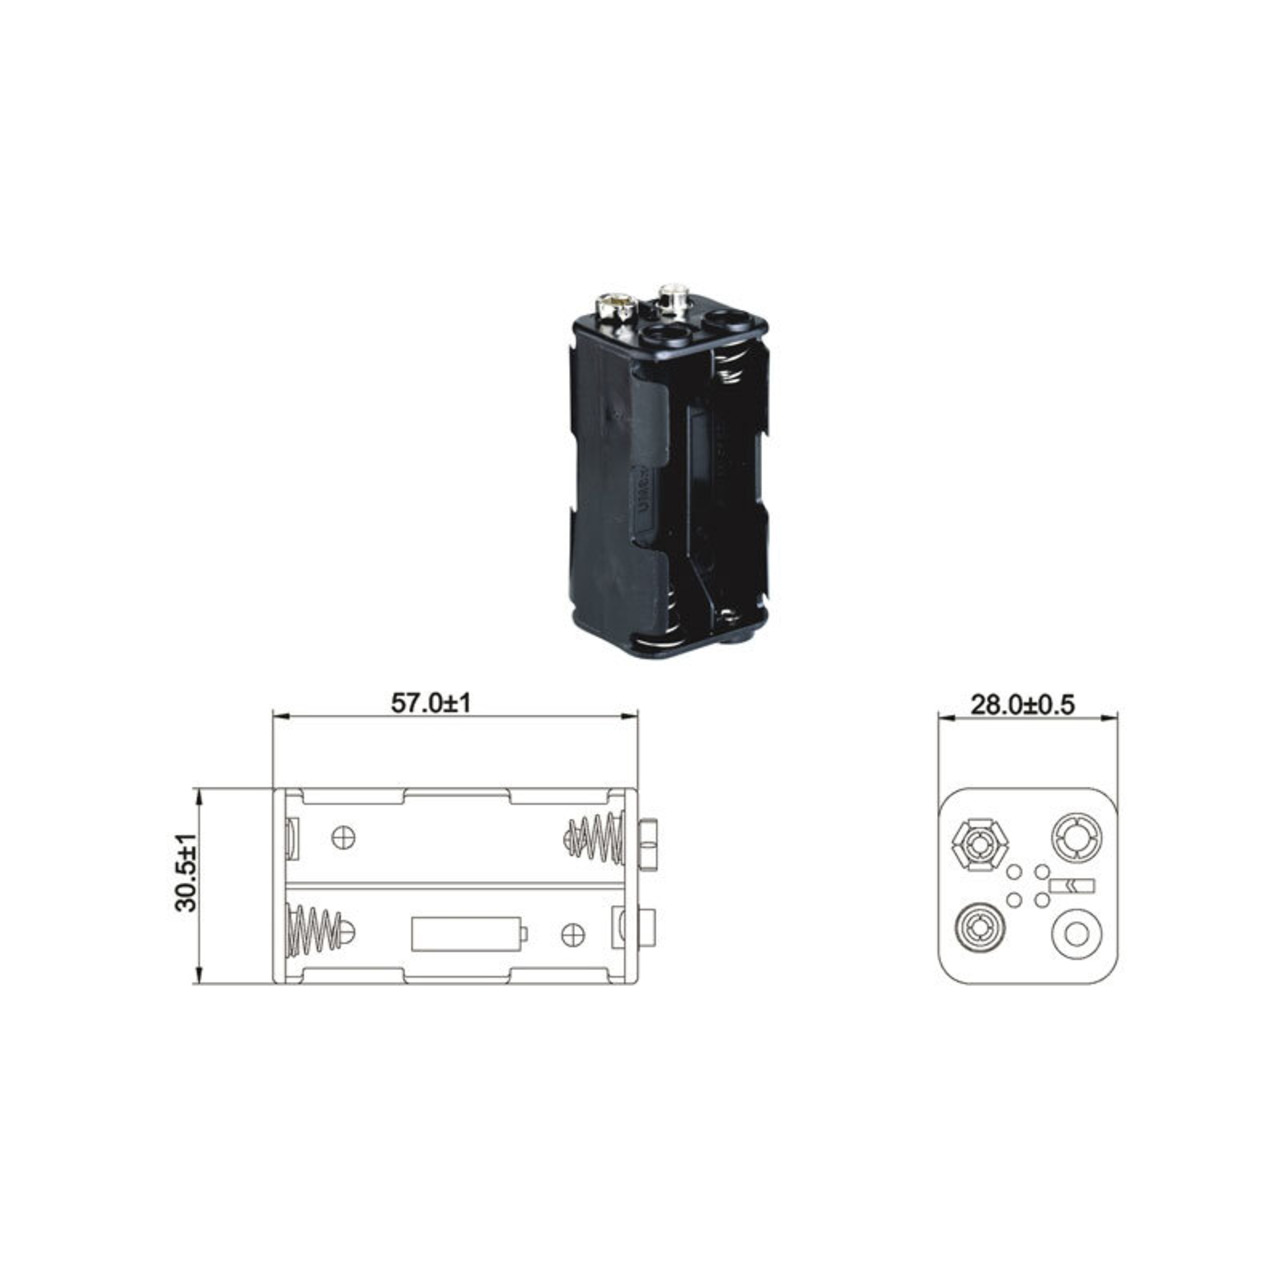 Batteriehalter für 4 x Mignon Batterie mit Druckknopf-Anschluss unter Stromversorgung